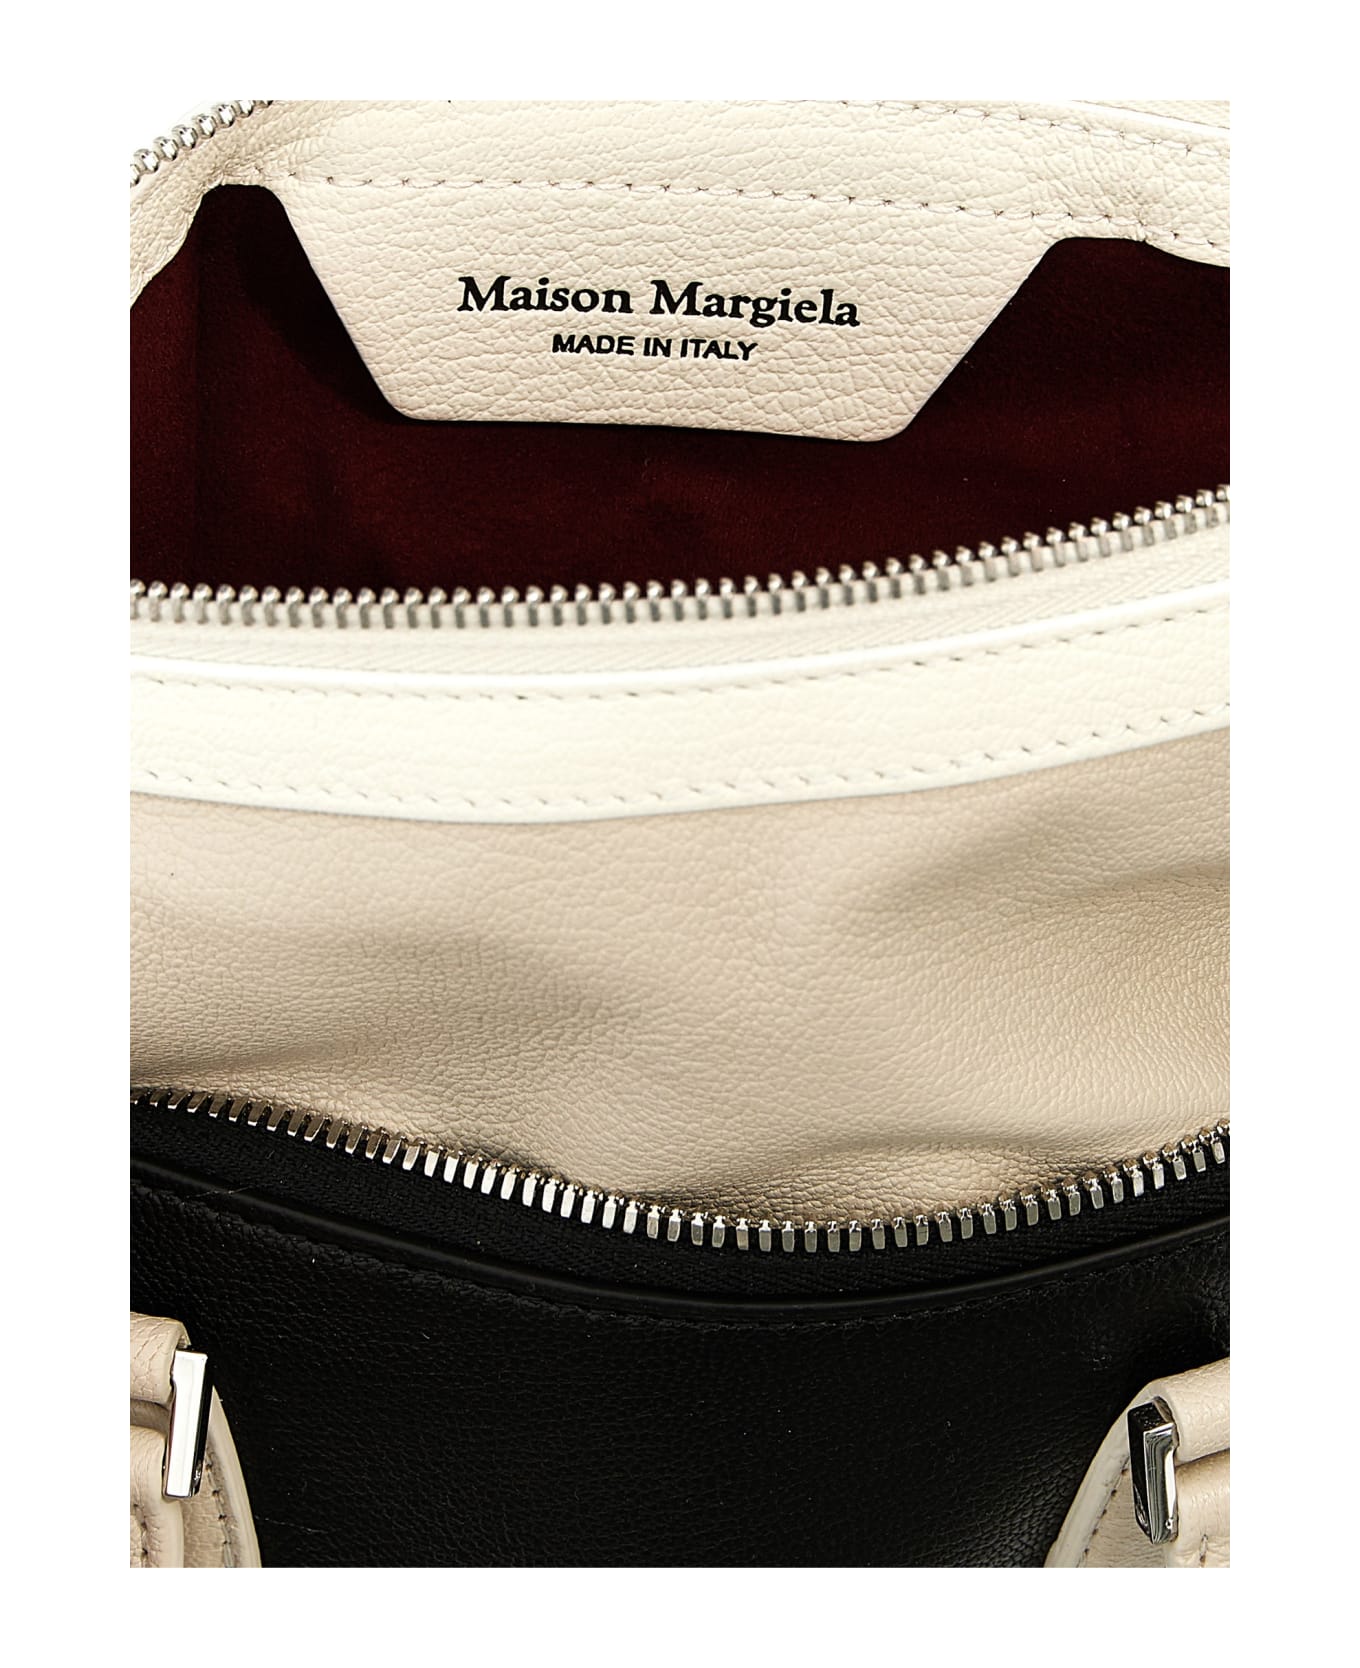 Maison Margiela 5ac Tote Bag - White/Black トートバッグ